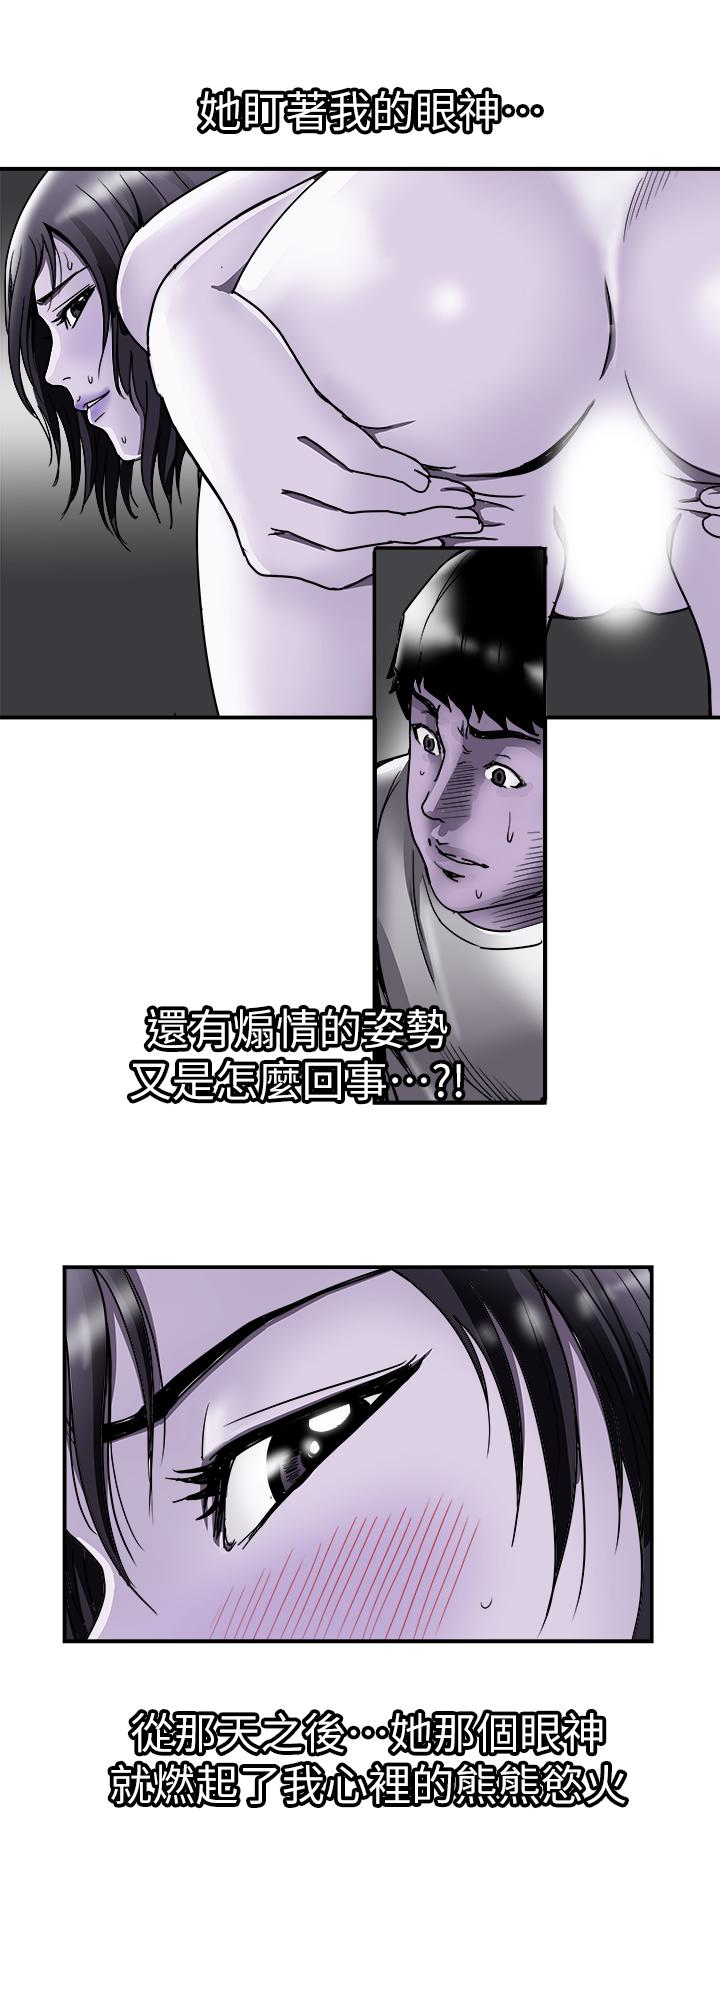 韩国污漫画 別人的老婆 第40话(第2季)-暗夜突袭而来的魔爪 5